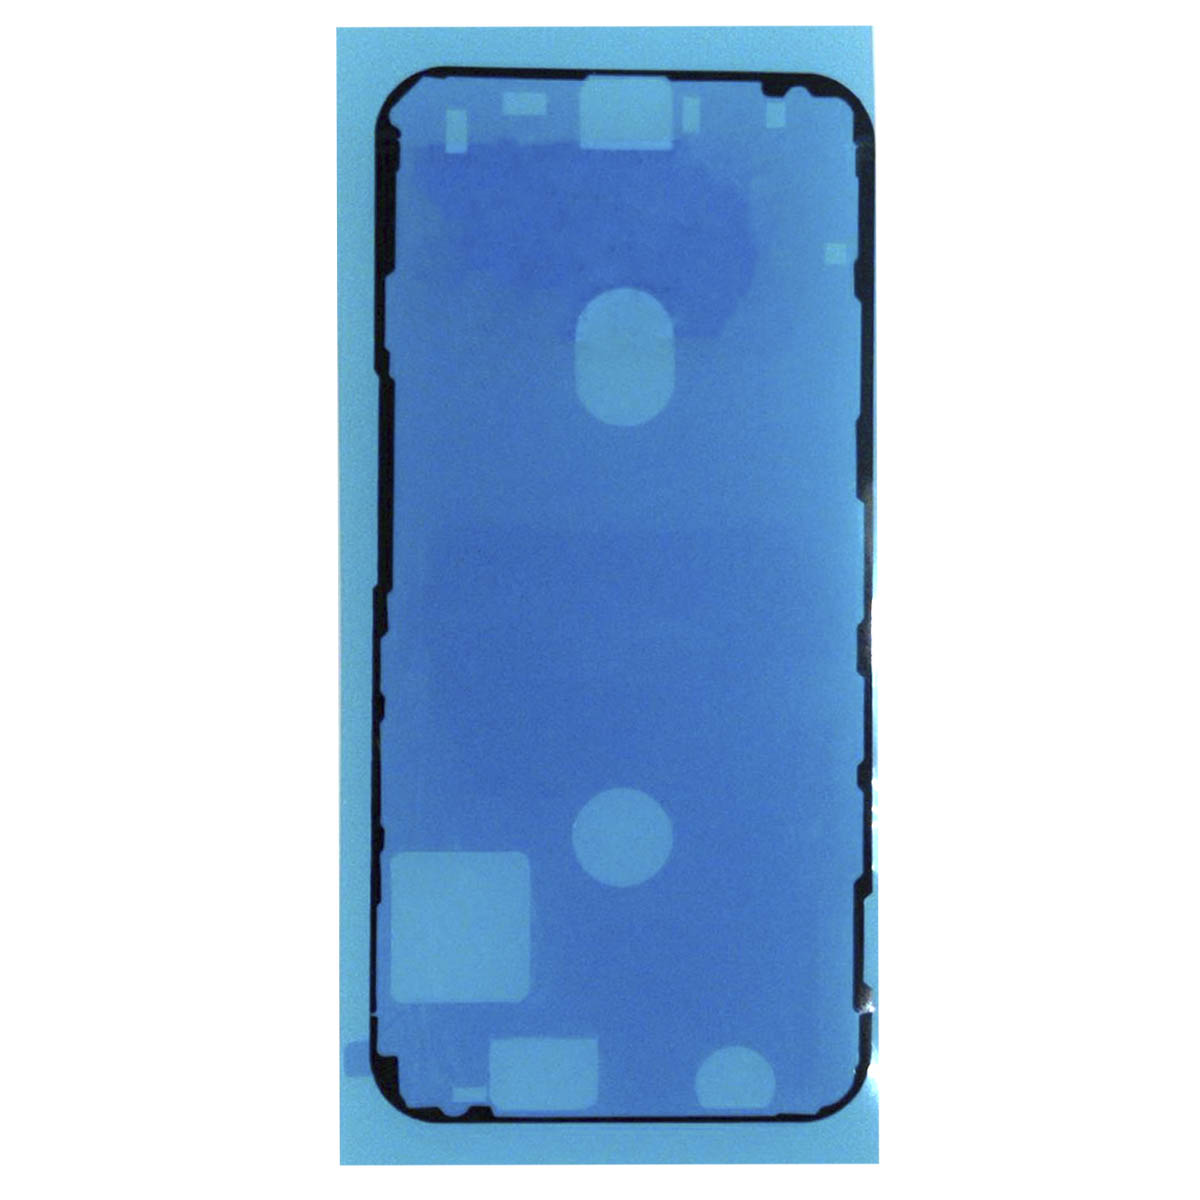 Пыле и влагозащитная прокладка, скотч сборки для APPLE iPhone 12 mini, цвет черный